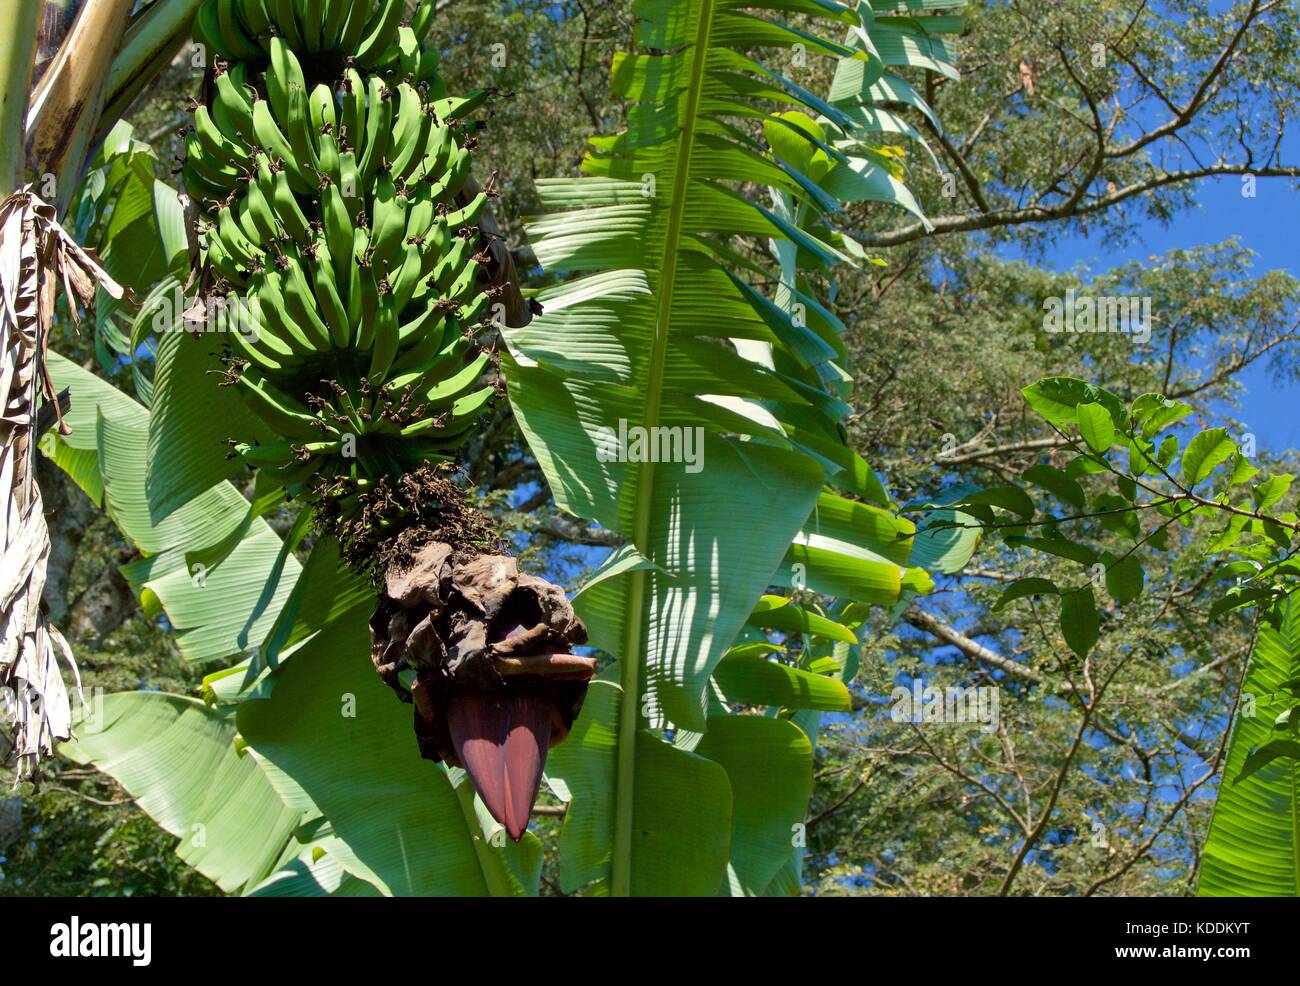 Banana tree, Kilimanjaro Region, Tanzania Stock Photo